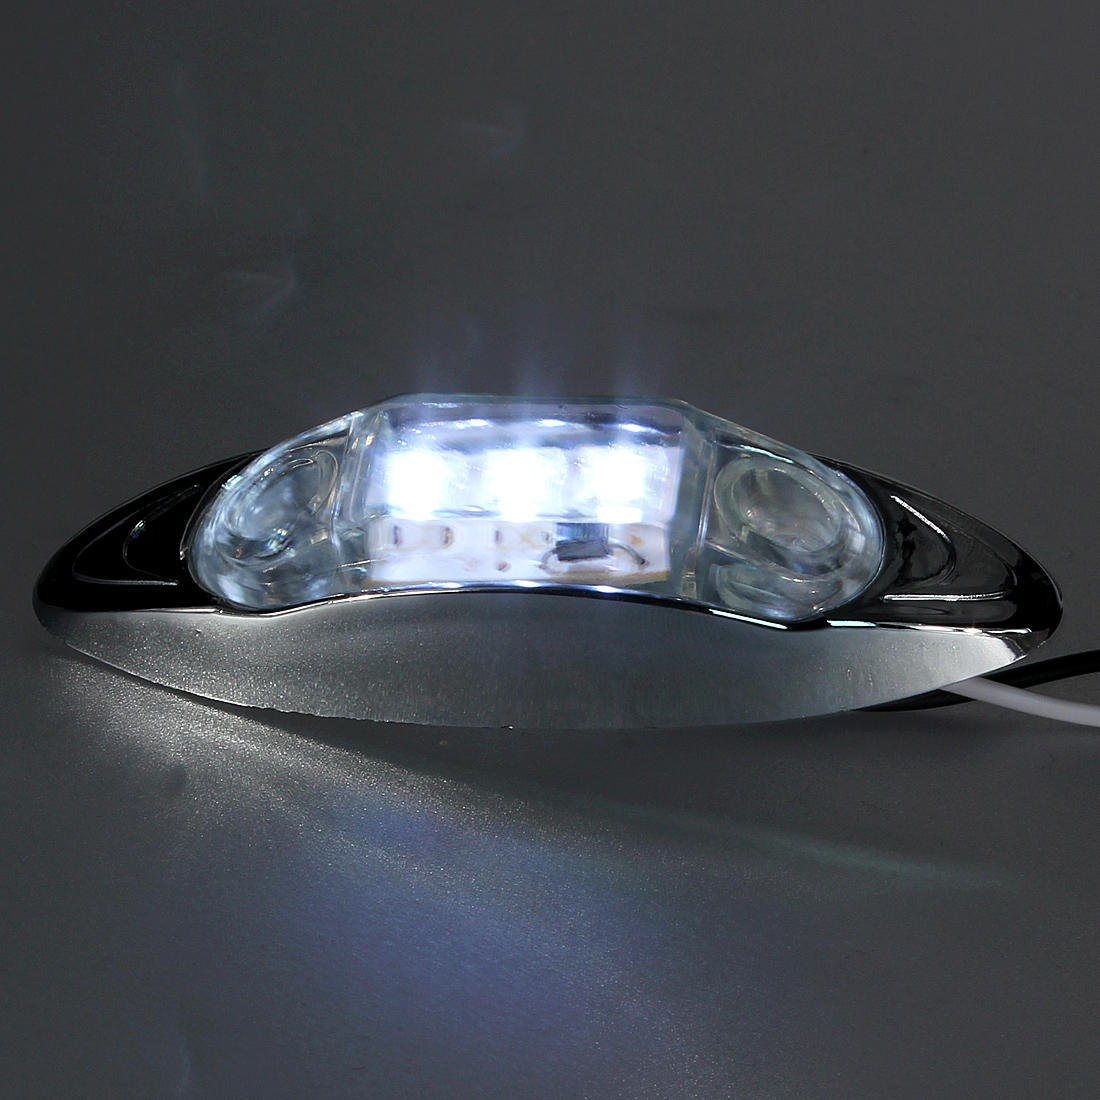 Waterproof-12V-LED-Side-MarkerClearance-Light-for-TruckTrailer-82016